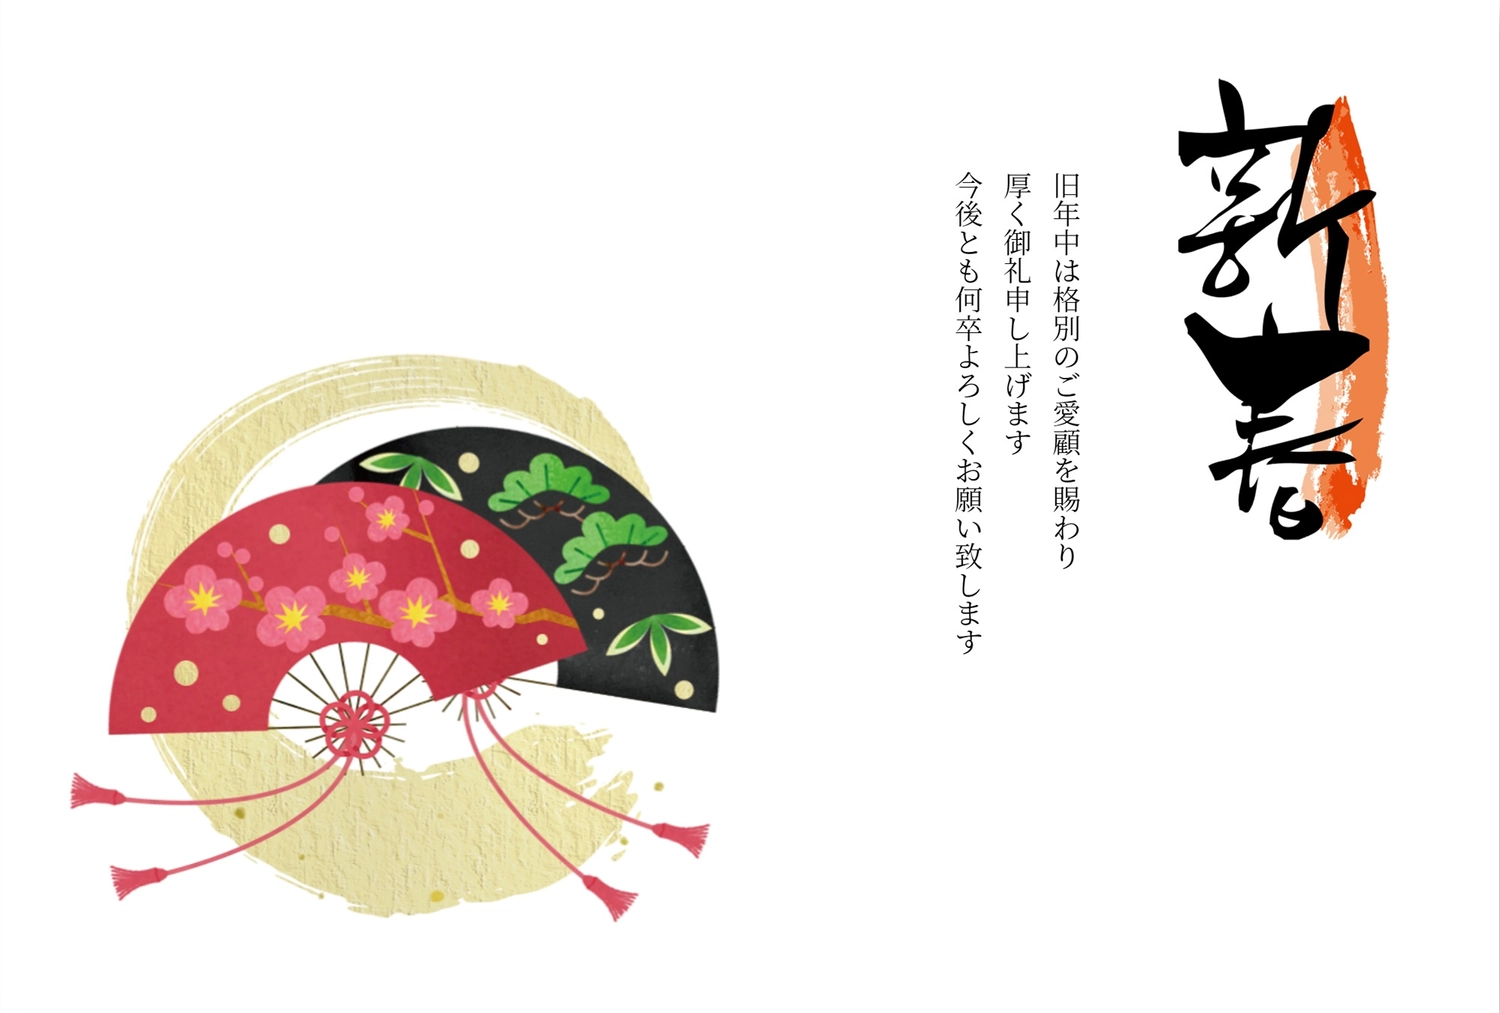 扇子の年賀状, lề, 筆字, Viết dọc, Thiệp năm mới mẫu